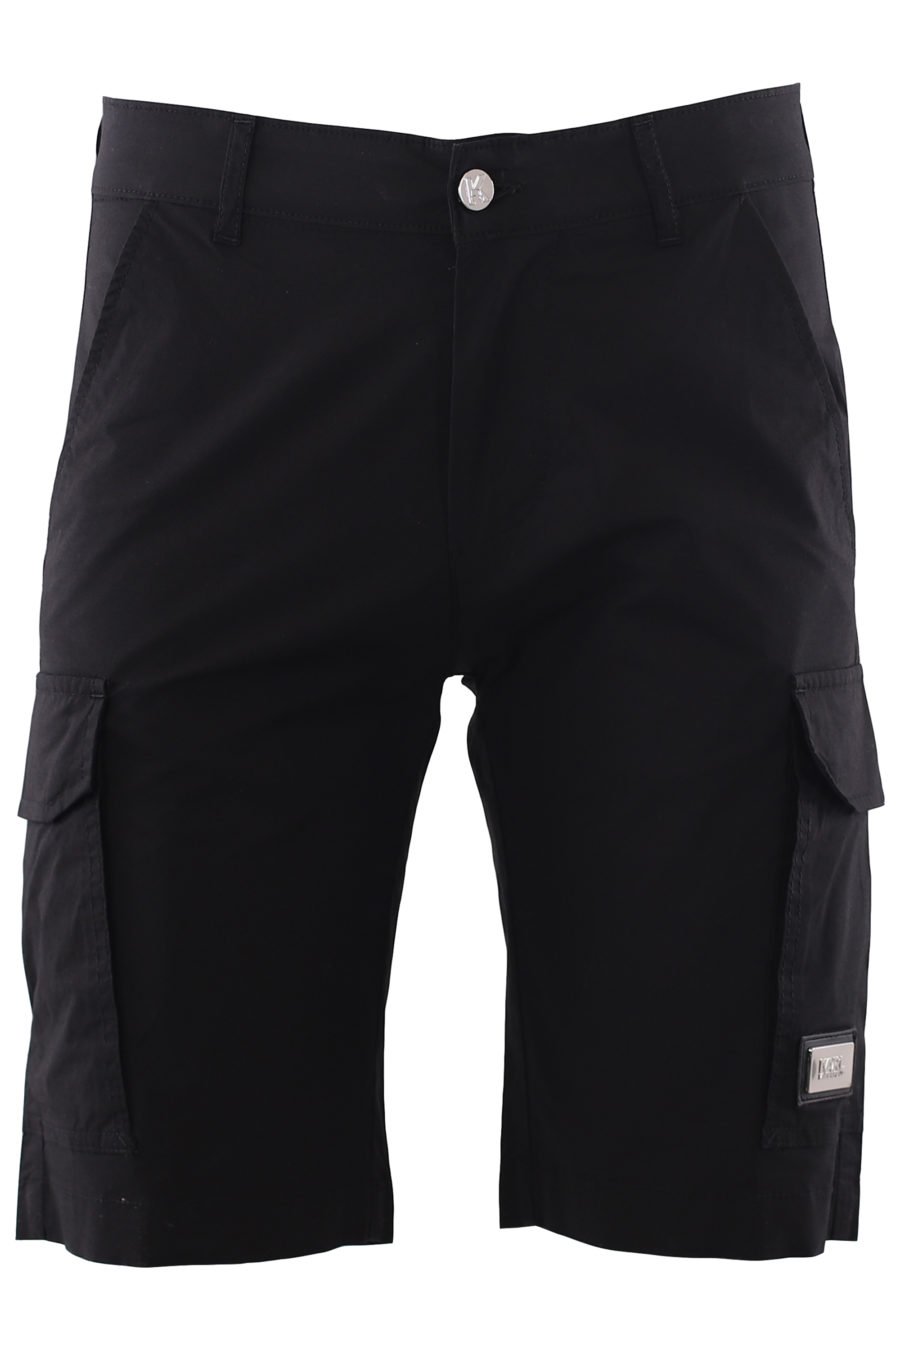 Black cargo shorts - IMG 6640